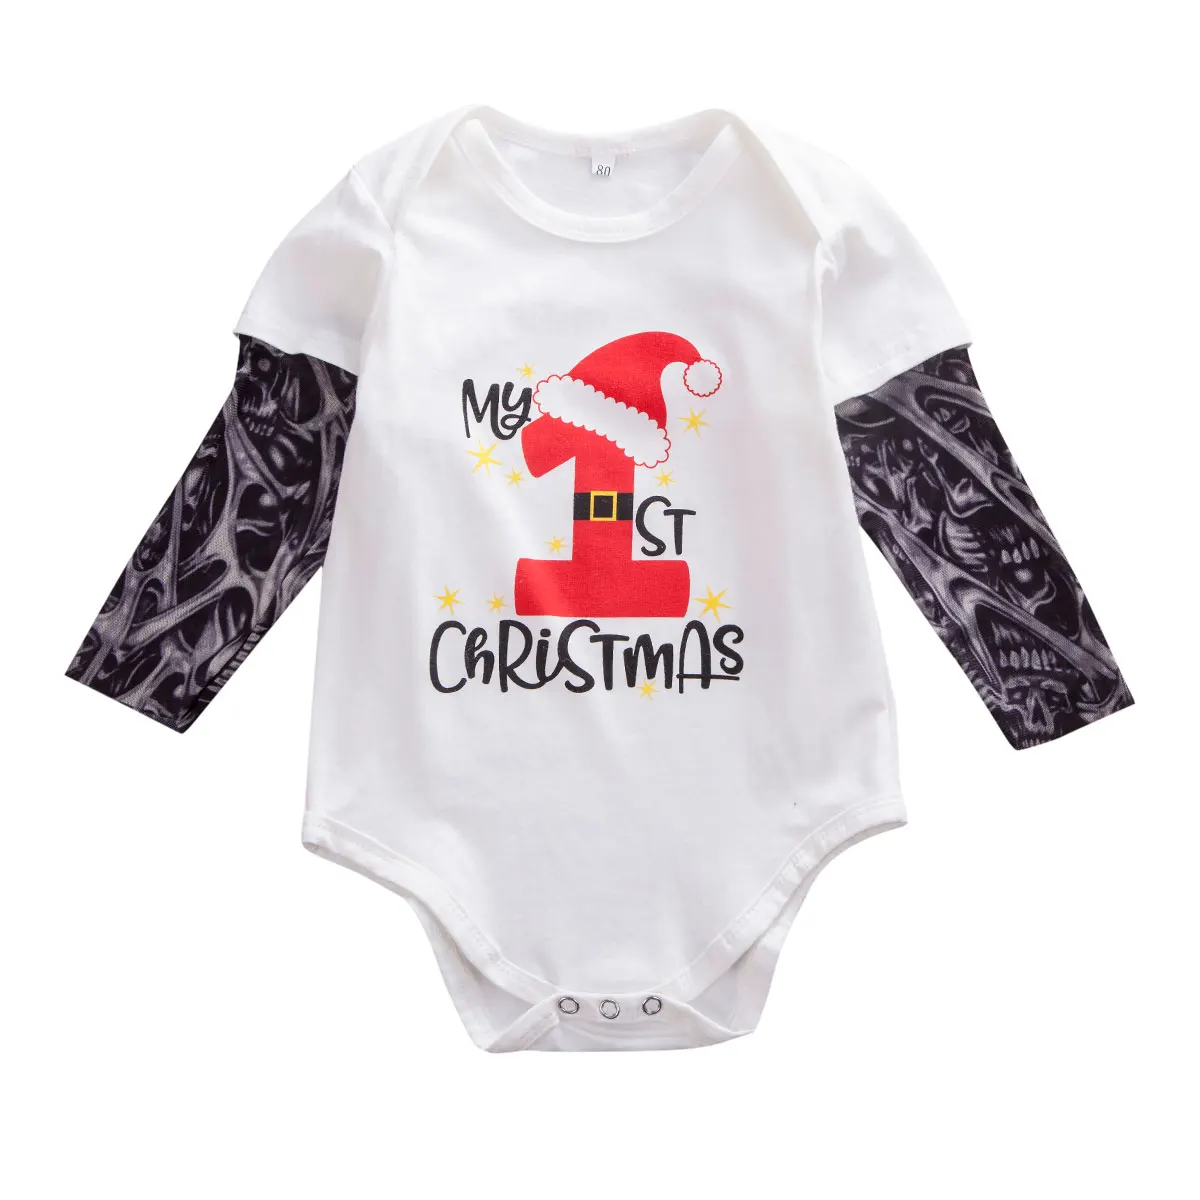 Одежда для новорожденных; Рождественская одежда для малышей; детское боди для мальчиков с надписью «My First Christmas»; комплект одежды для маленьких девочек